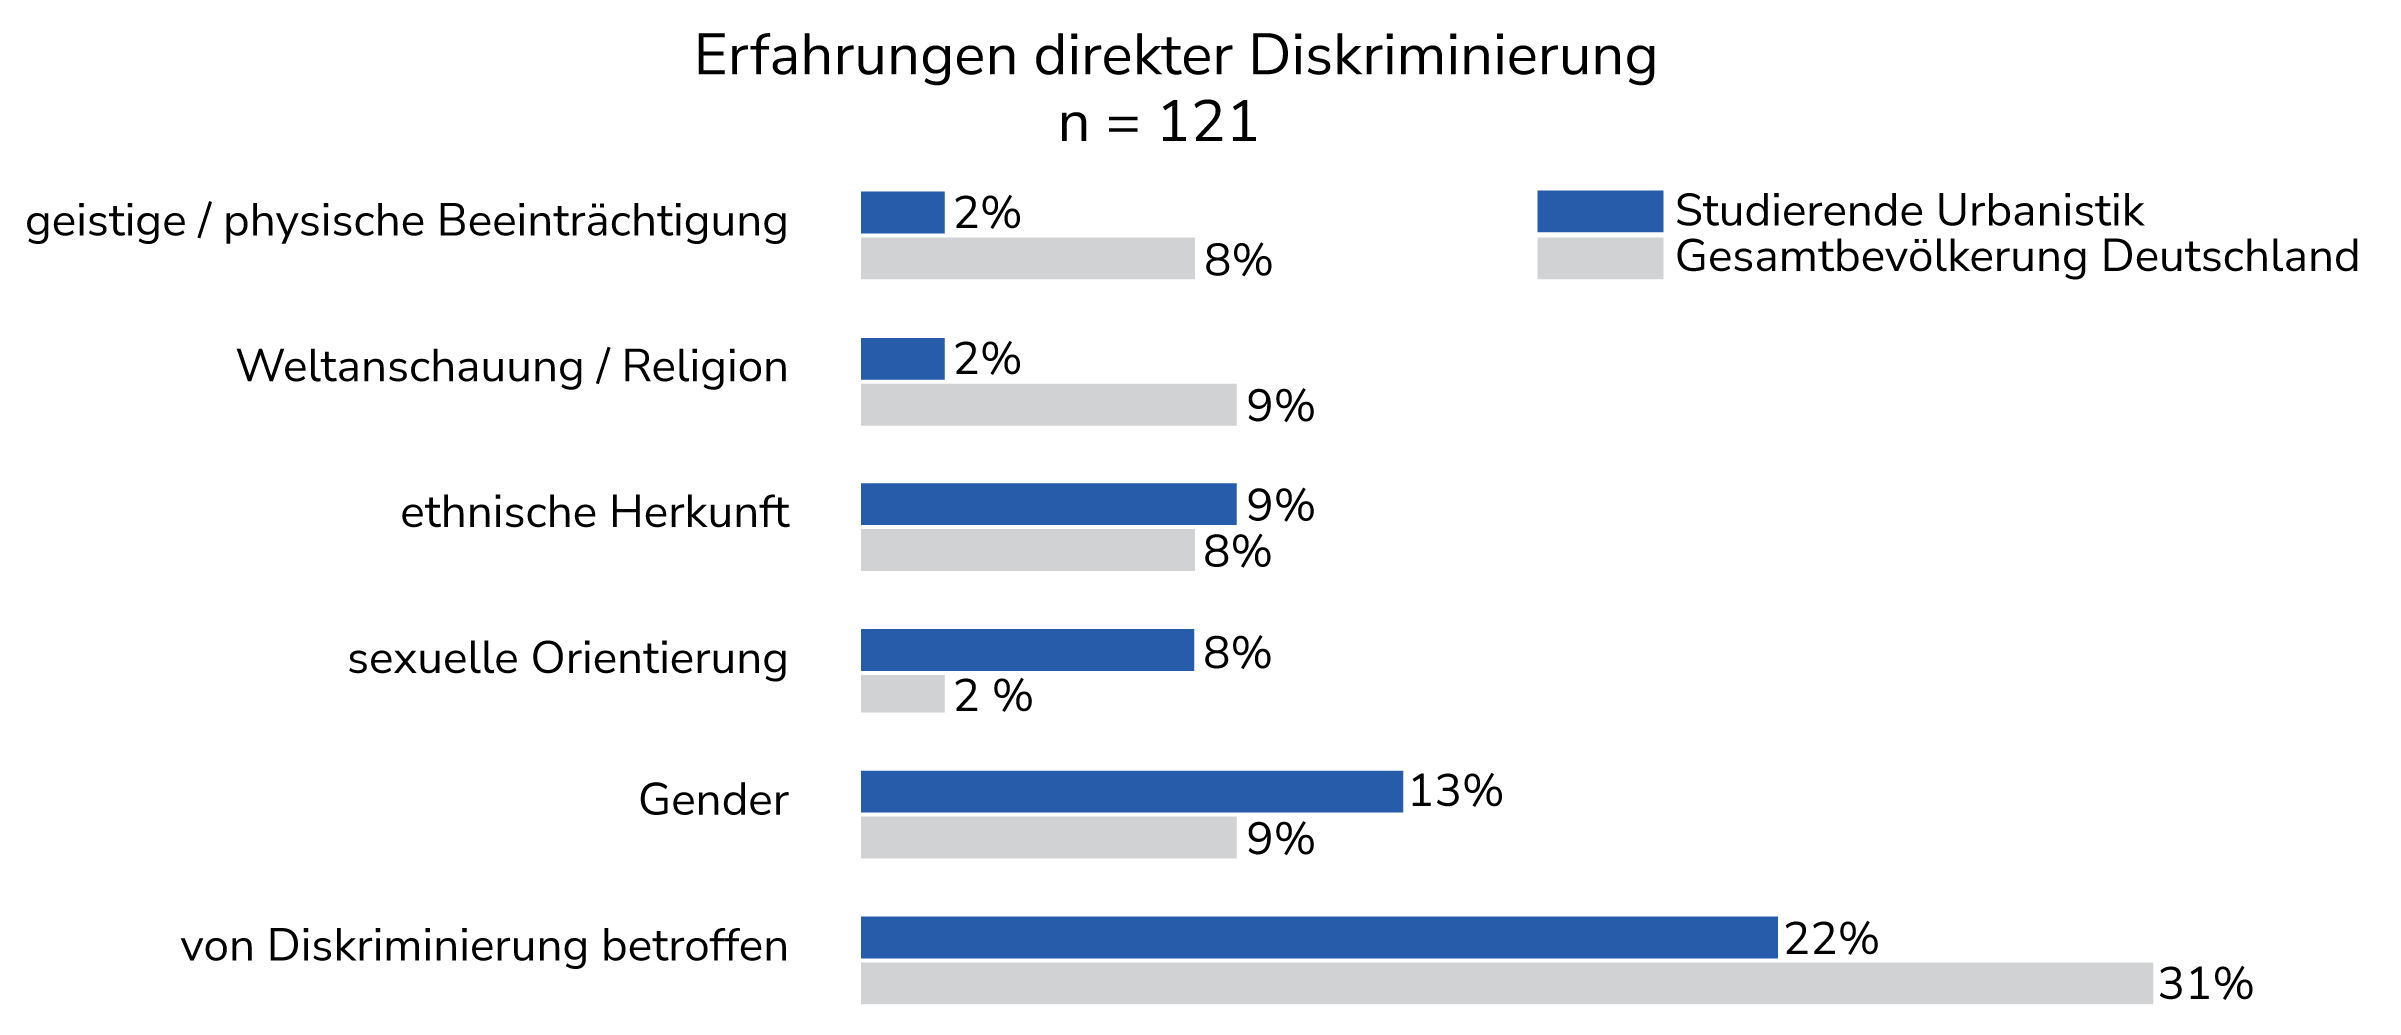 Abb. 1 Erfahrungen direkter Diskriminierung von
					Studierenden im Bachelor Urbanistik der Bauhaus-Universität Weimar (nach Grund laut
					Selbsteinschätzung) (Quelle: eigene Daten)